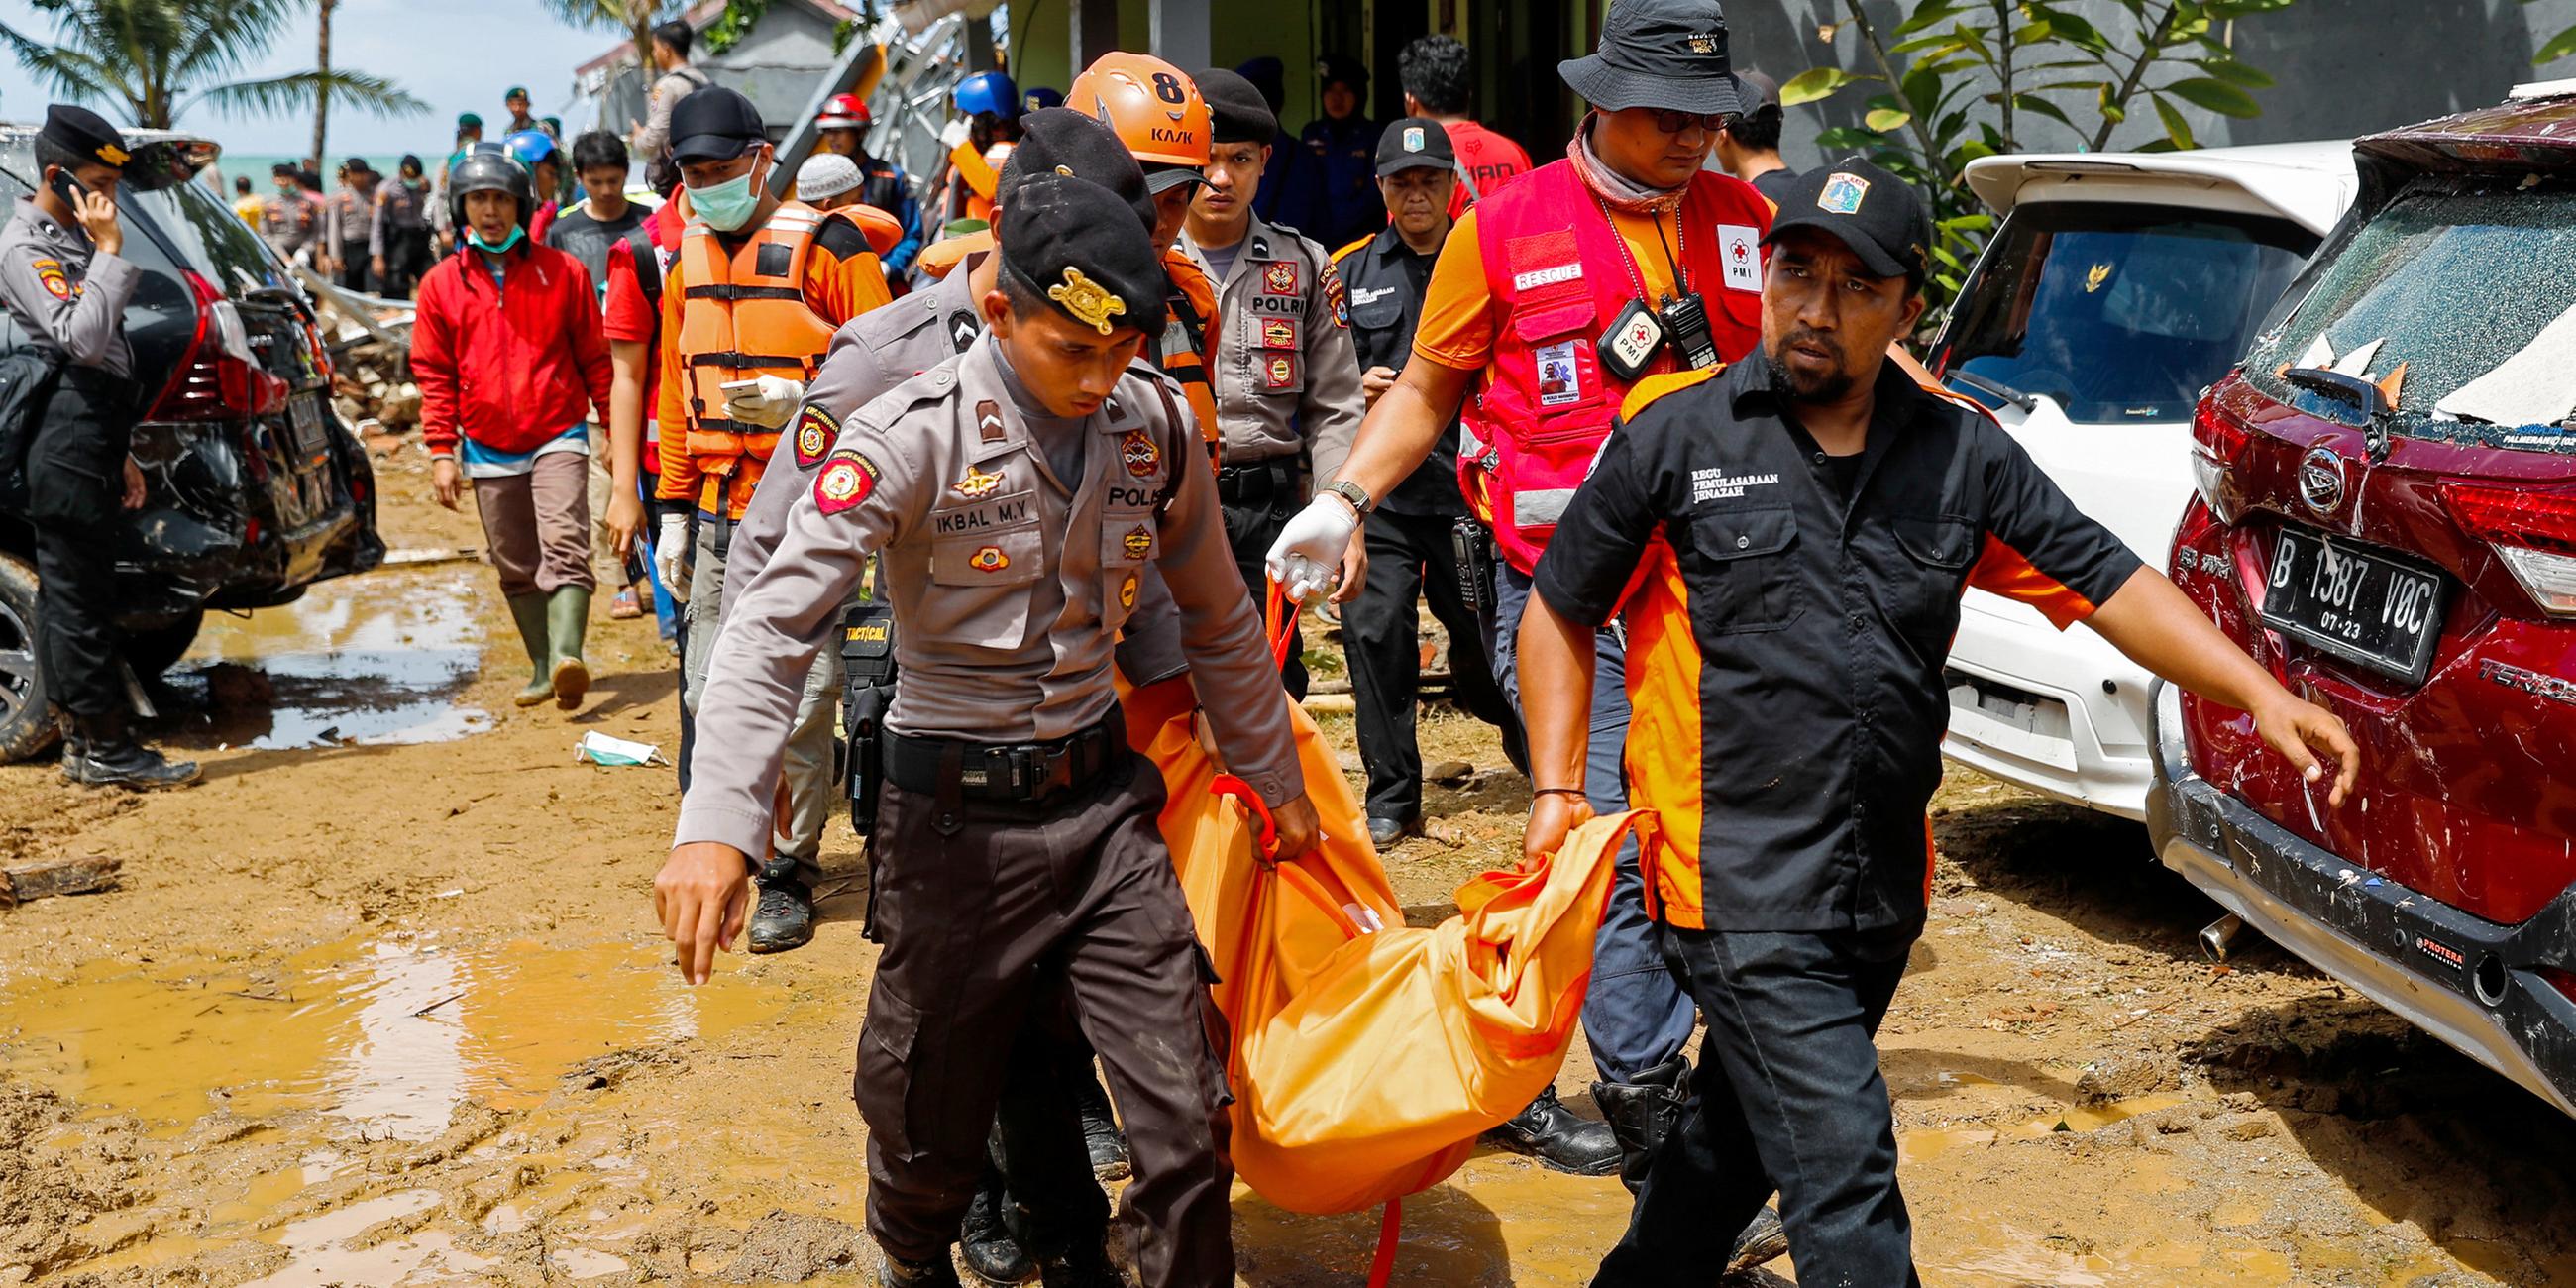 Rettungskräfte tragen eine Leiche nach dem Tsunami in Pandeglang (Indonesien), aufgenommen am 24.12.2018